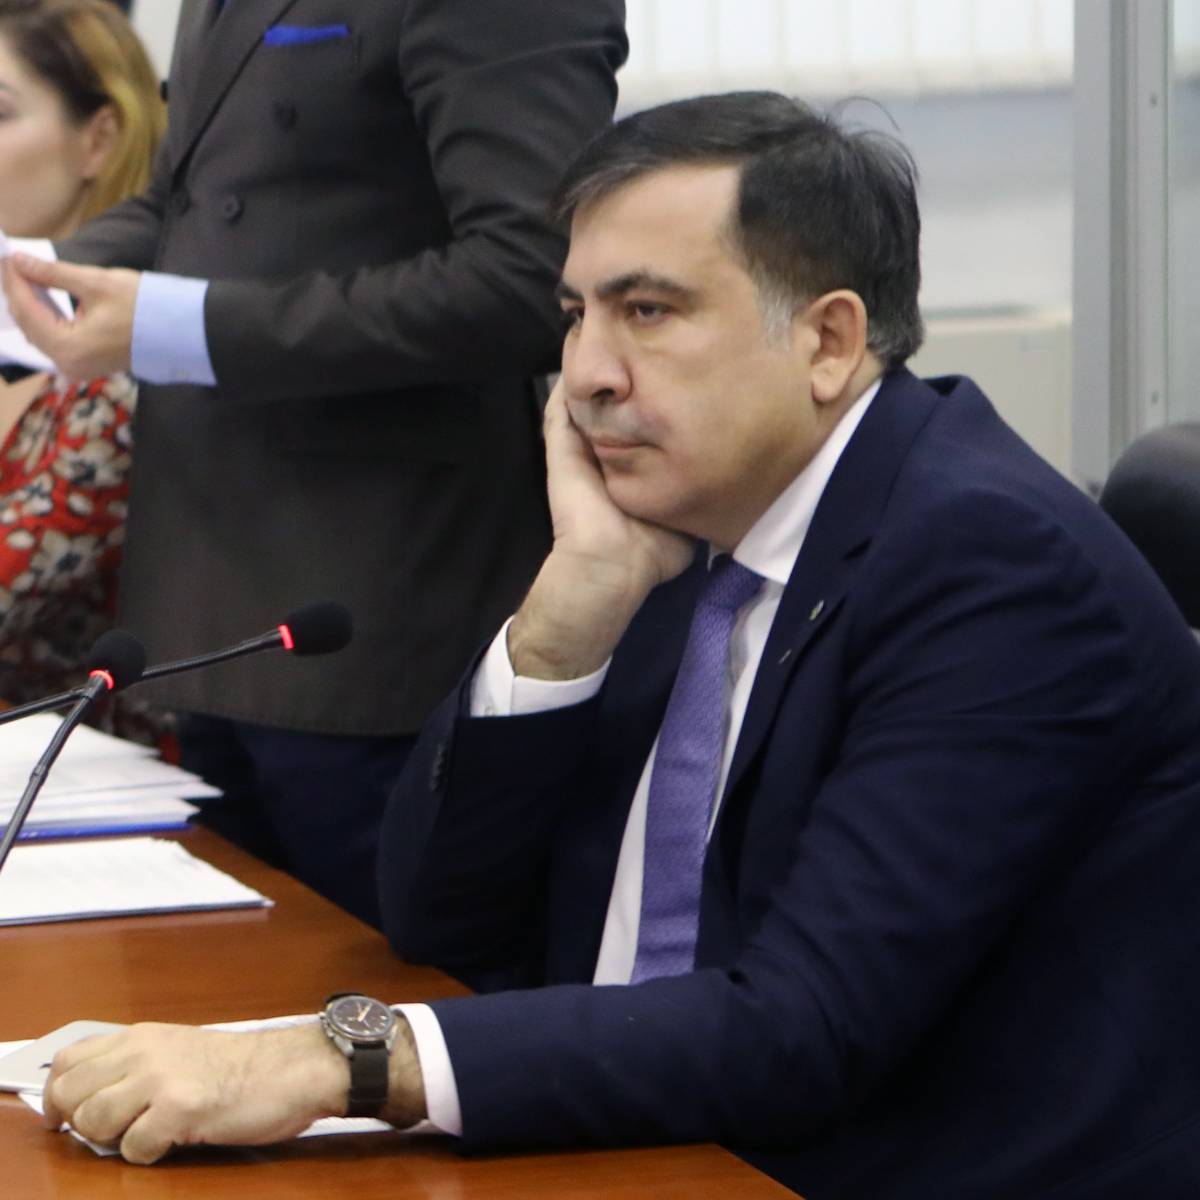 "Я соскучился". Саакашвили попросил пустить его на Украину